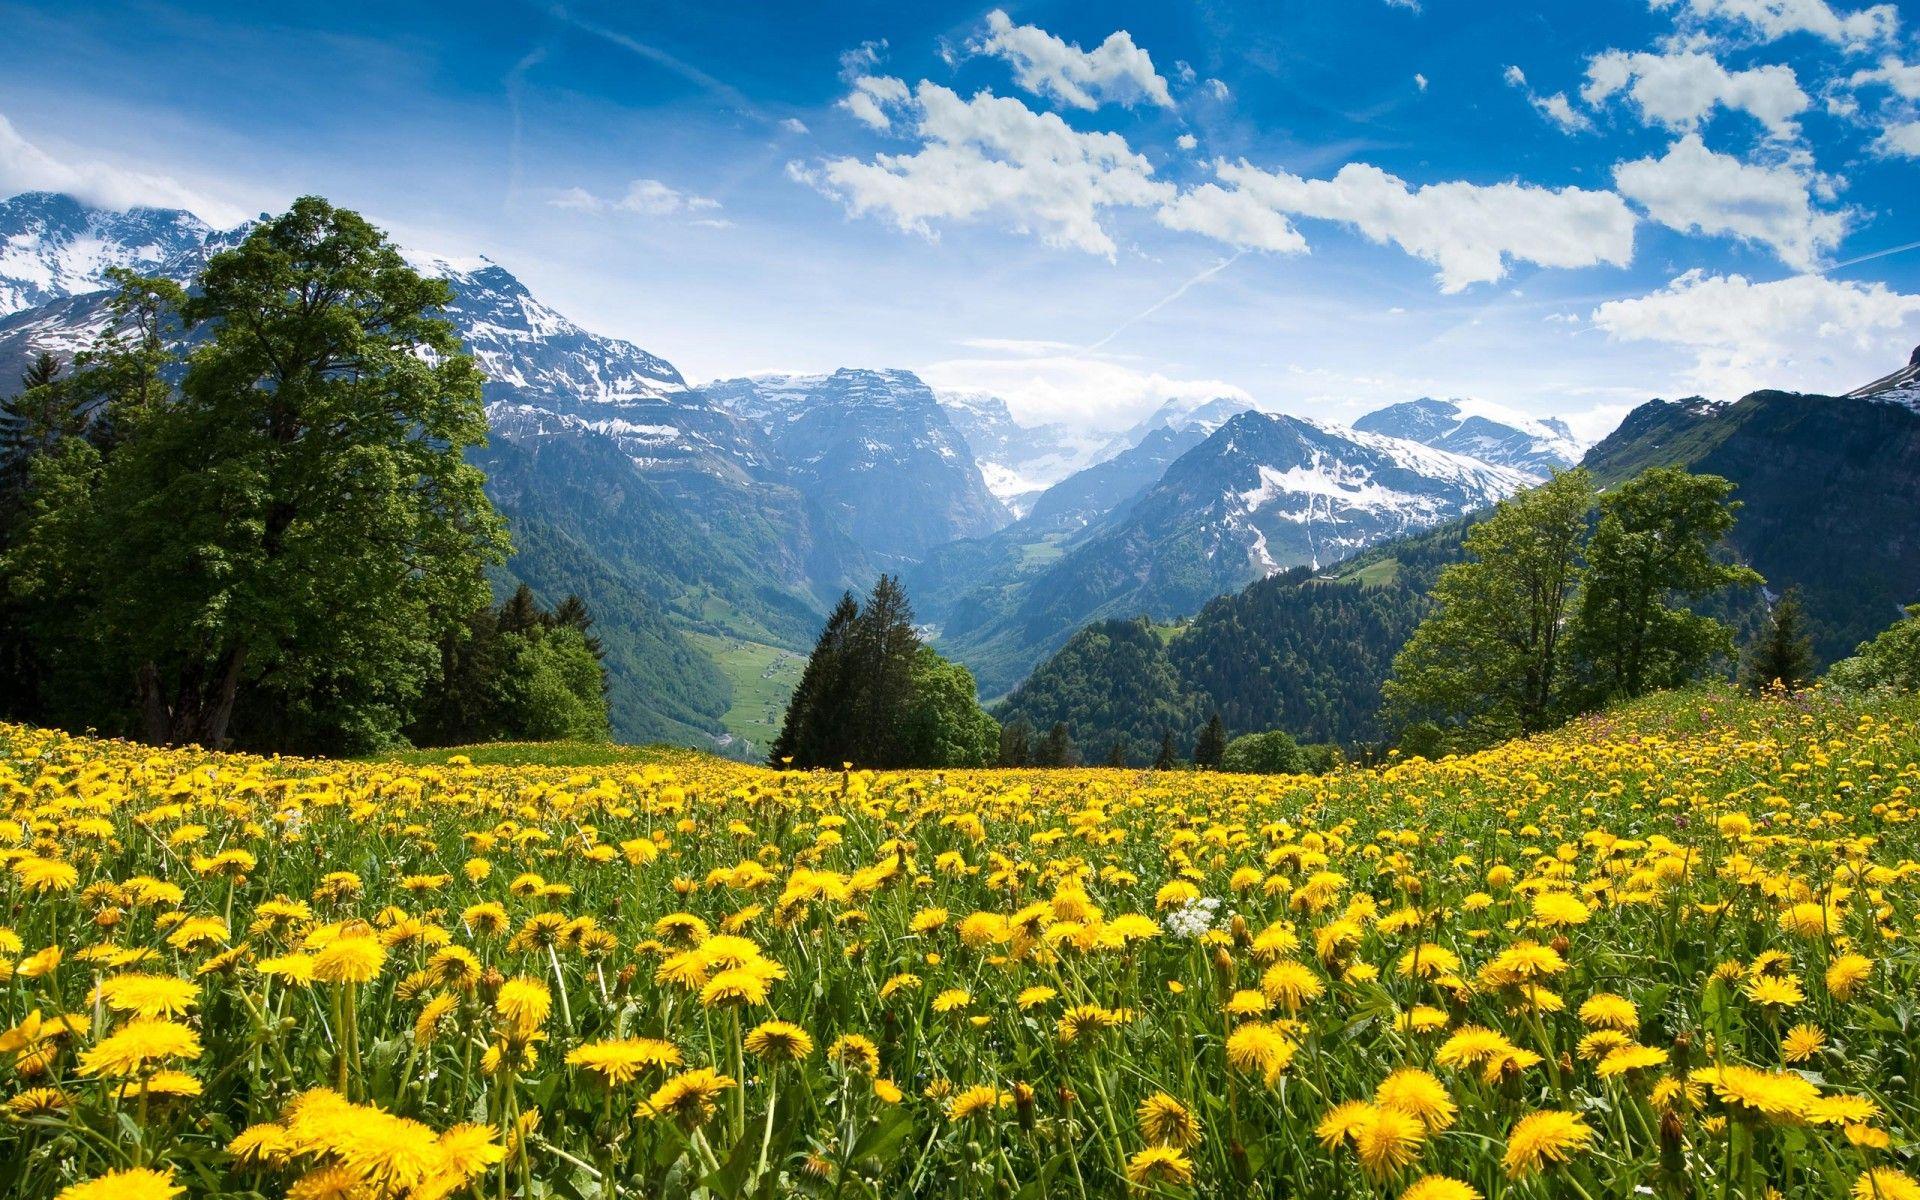 Alps Mountain By Flower Meadows. Mountain landscape, Scenery